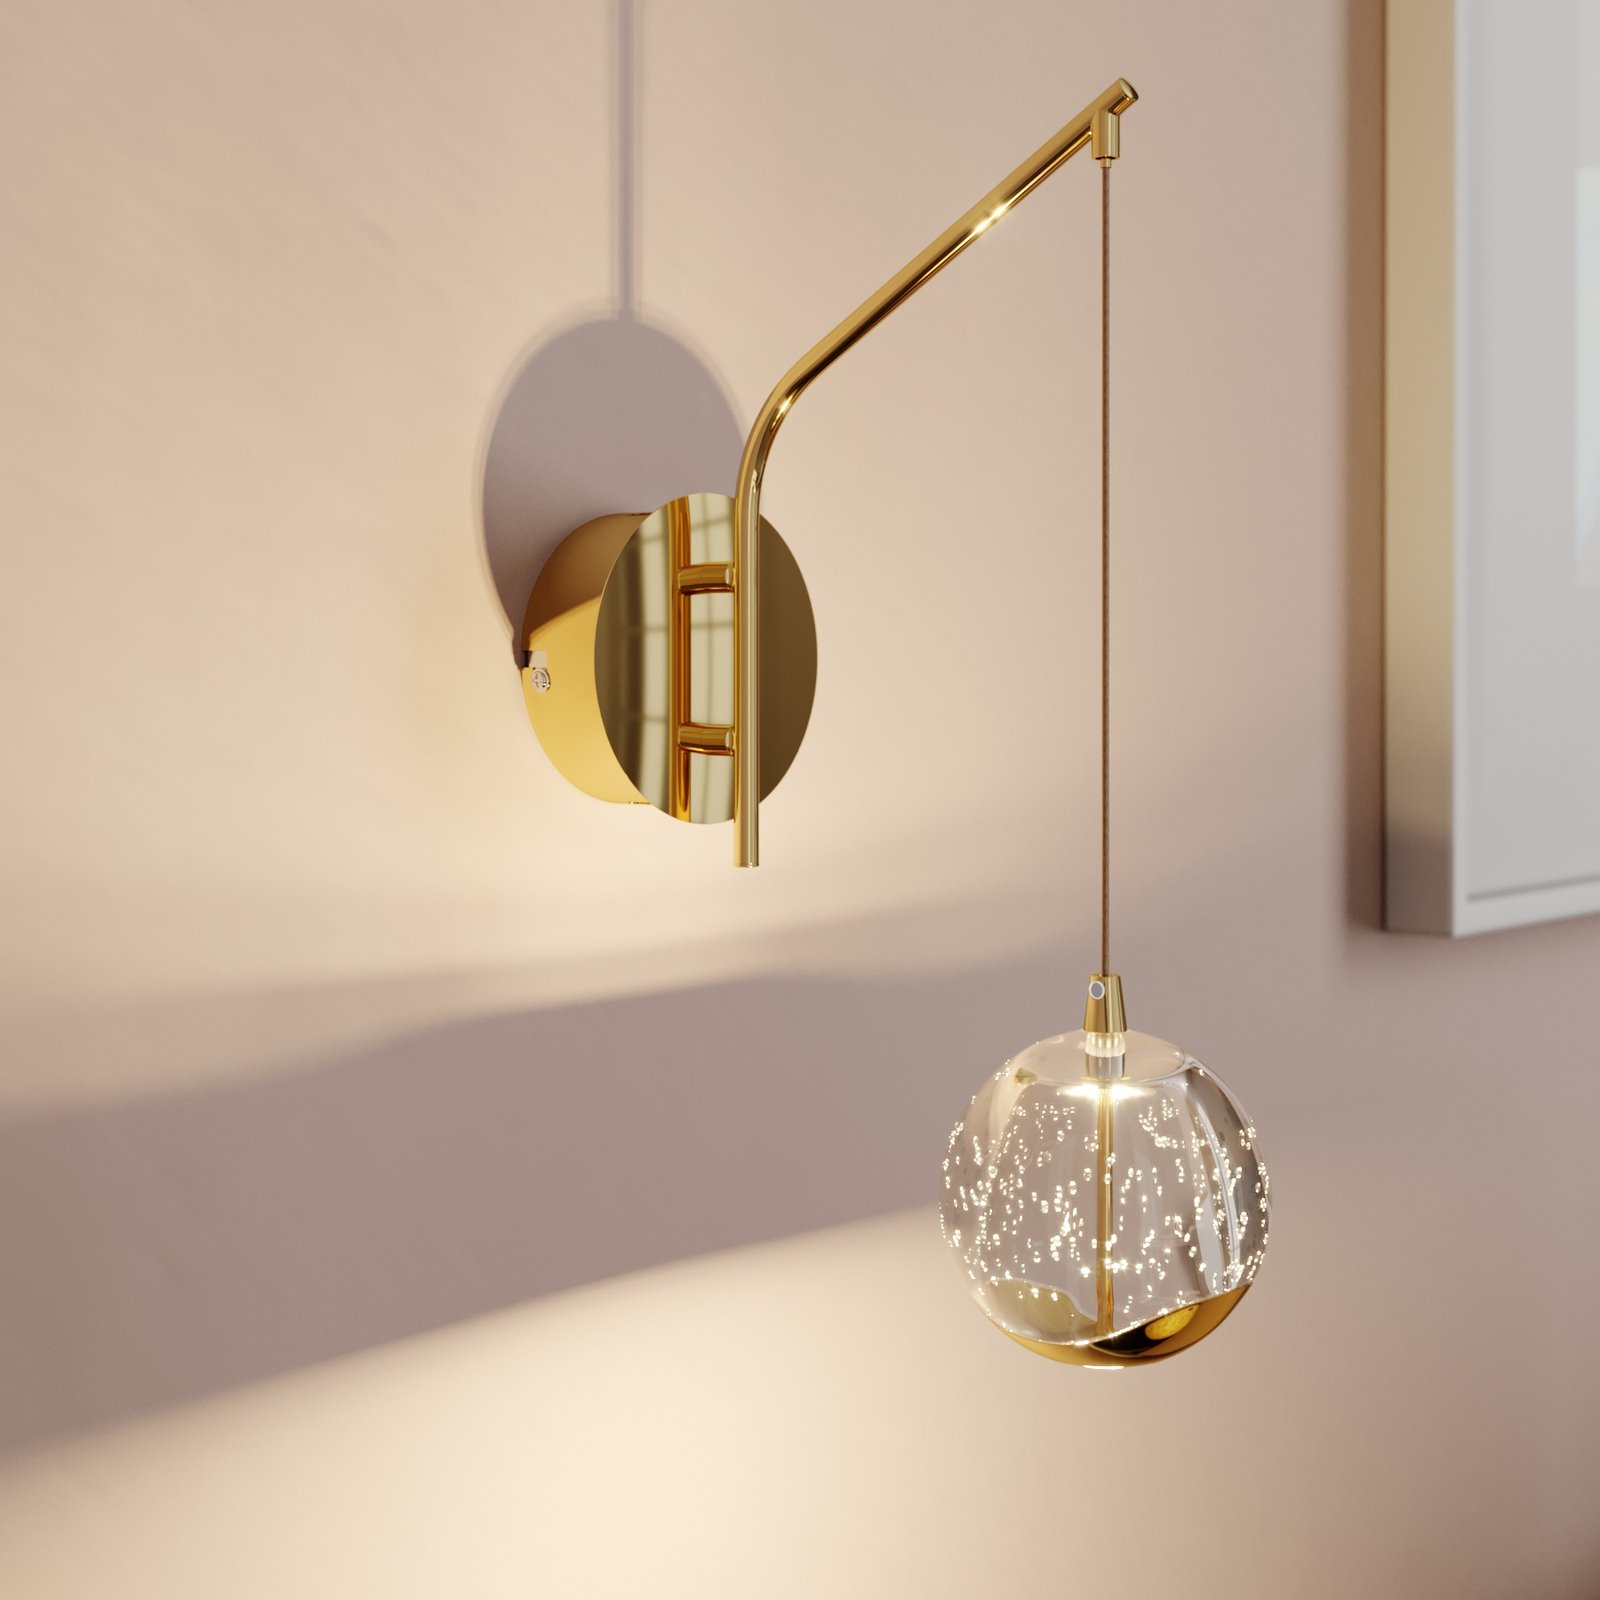 LED-vägglampa Hayley med hängande kula, guld